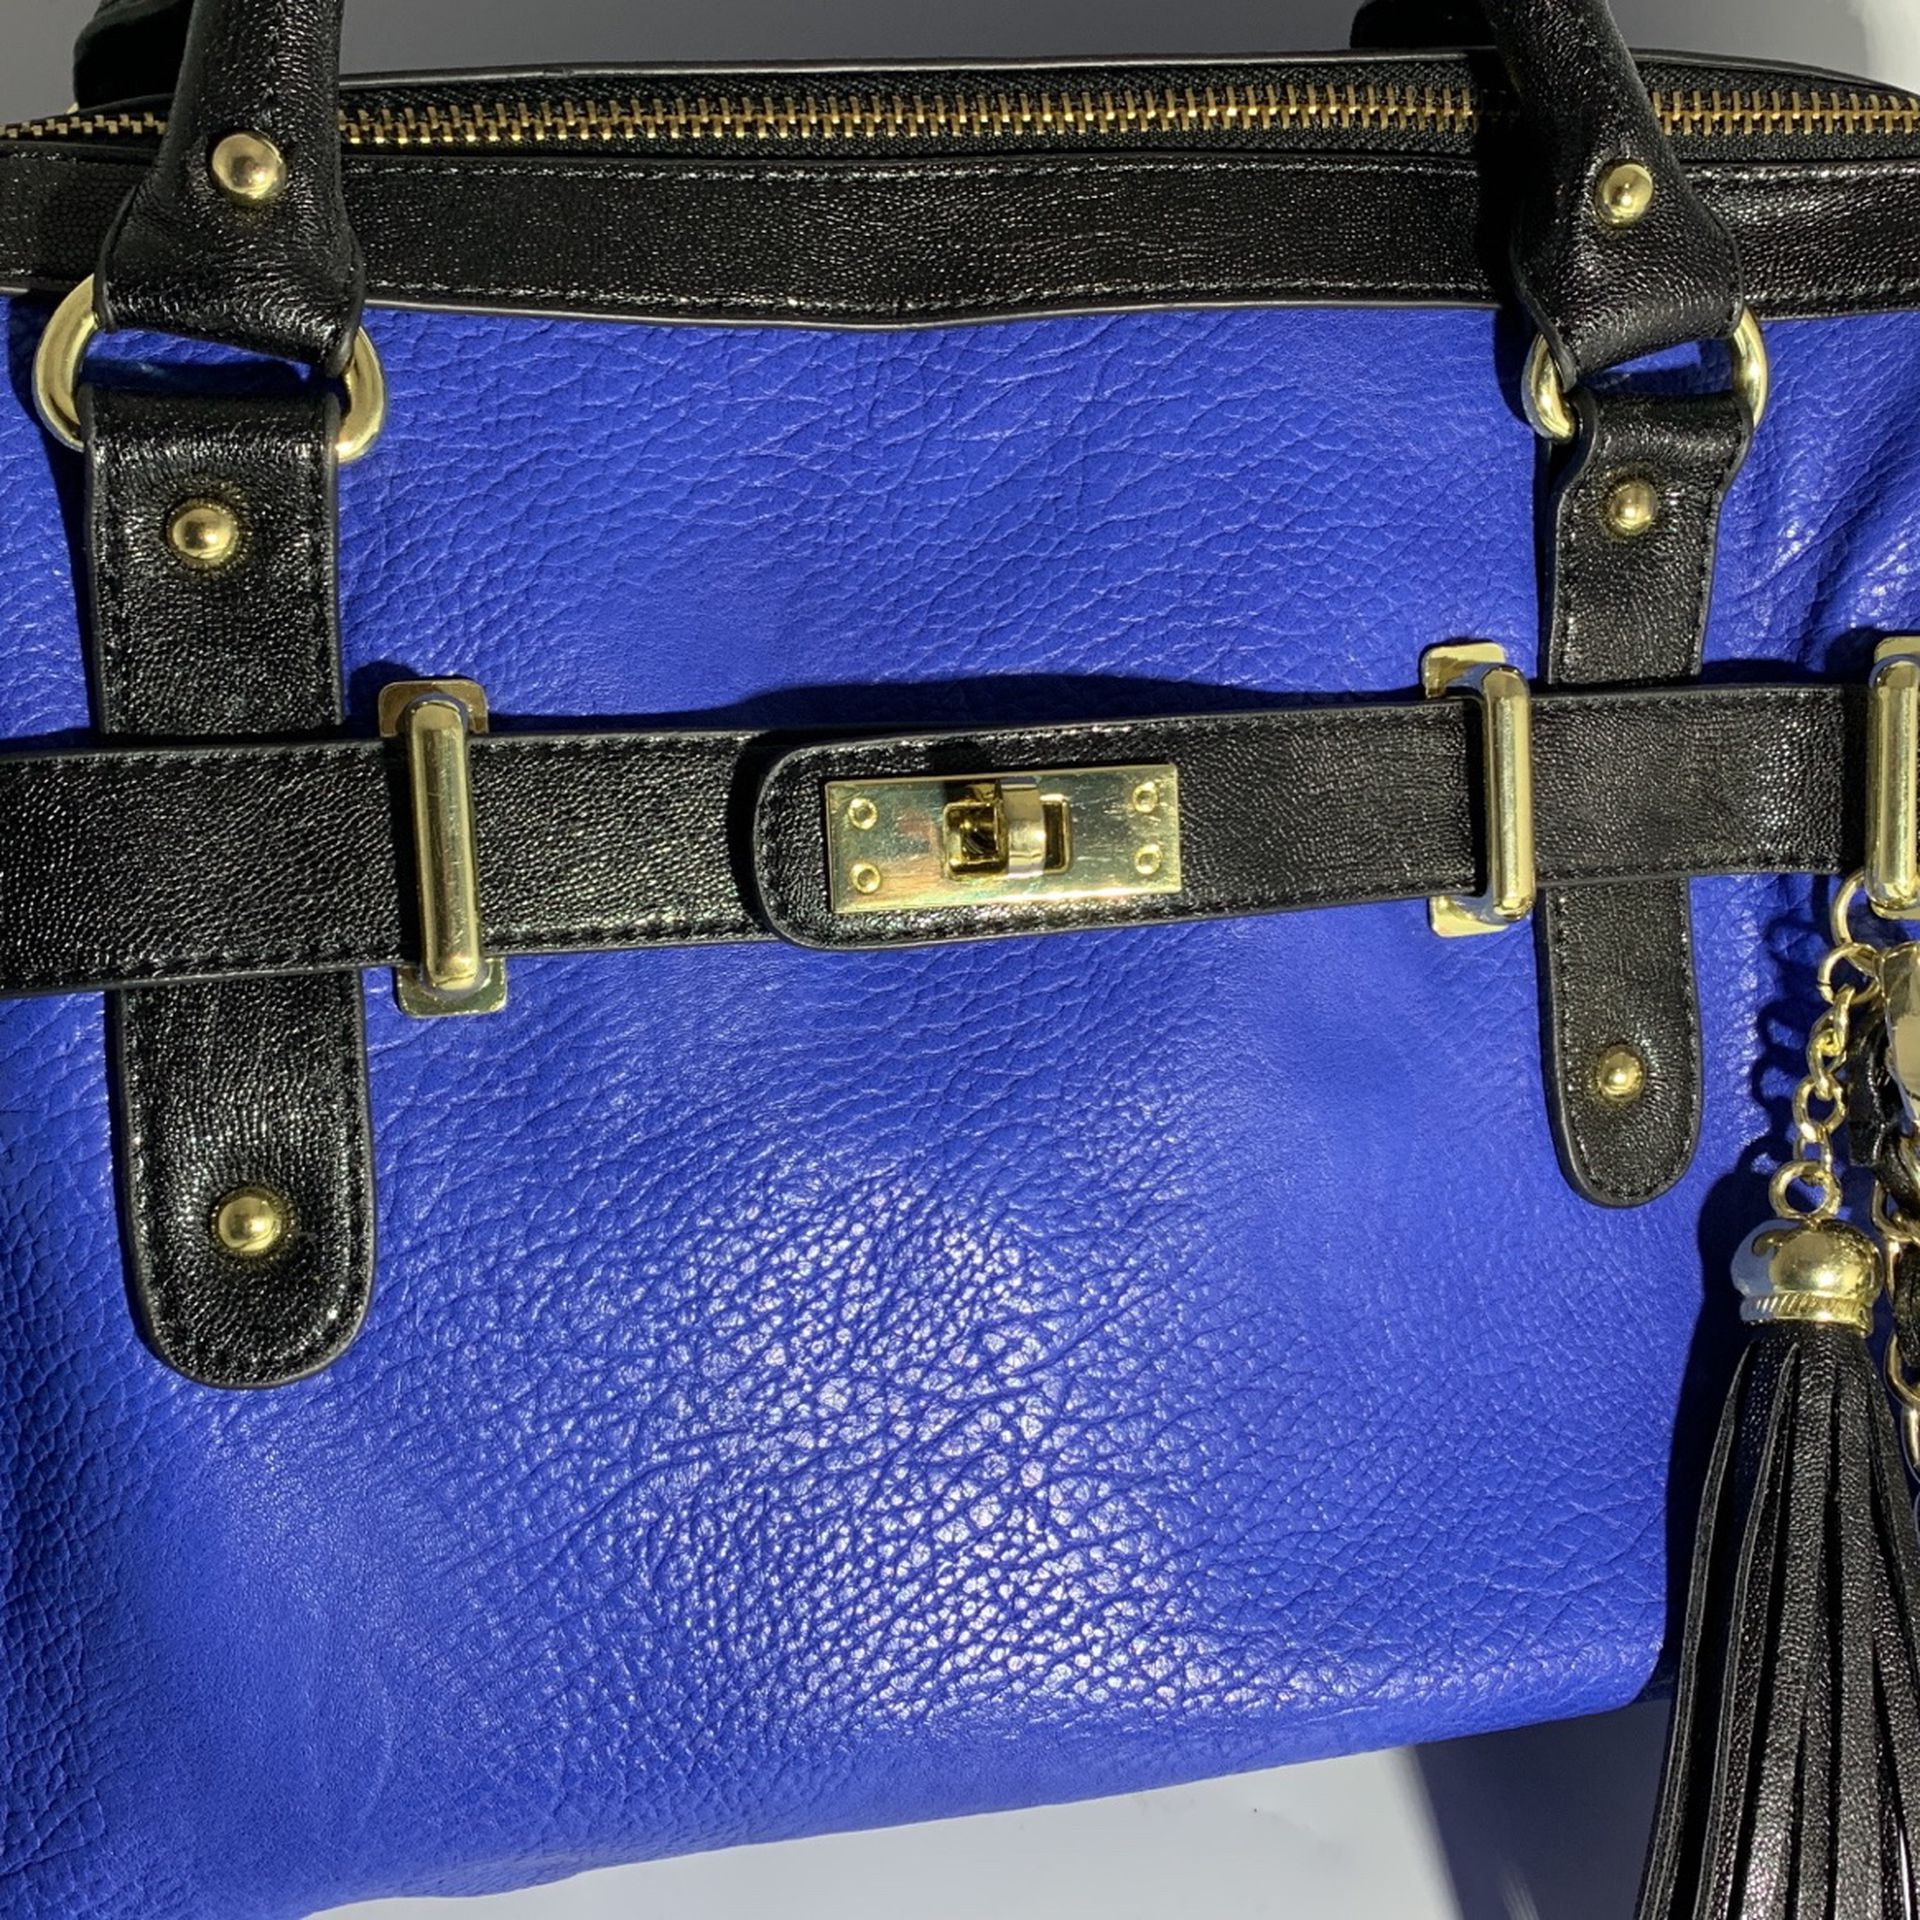 Brand: Steve Madden Steve Madden Blue Leather Handbag - Cobalt Blue Doctor, Boston Bag or Shoulder Bag - Blue